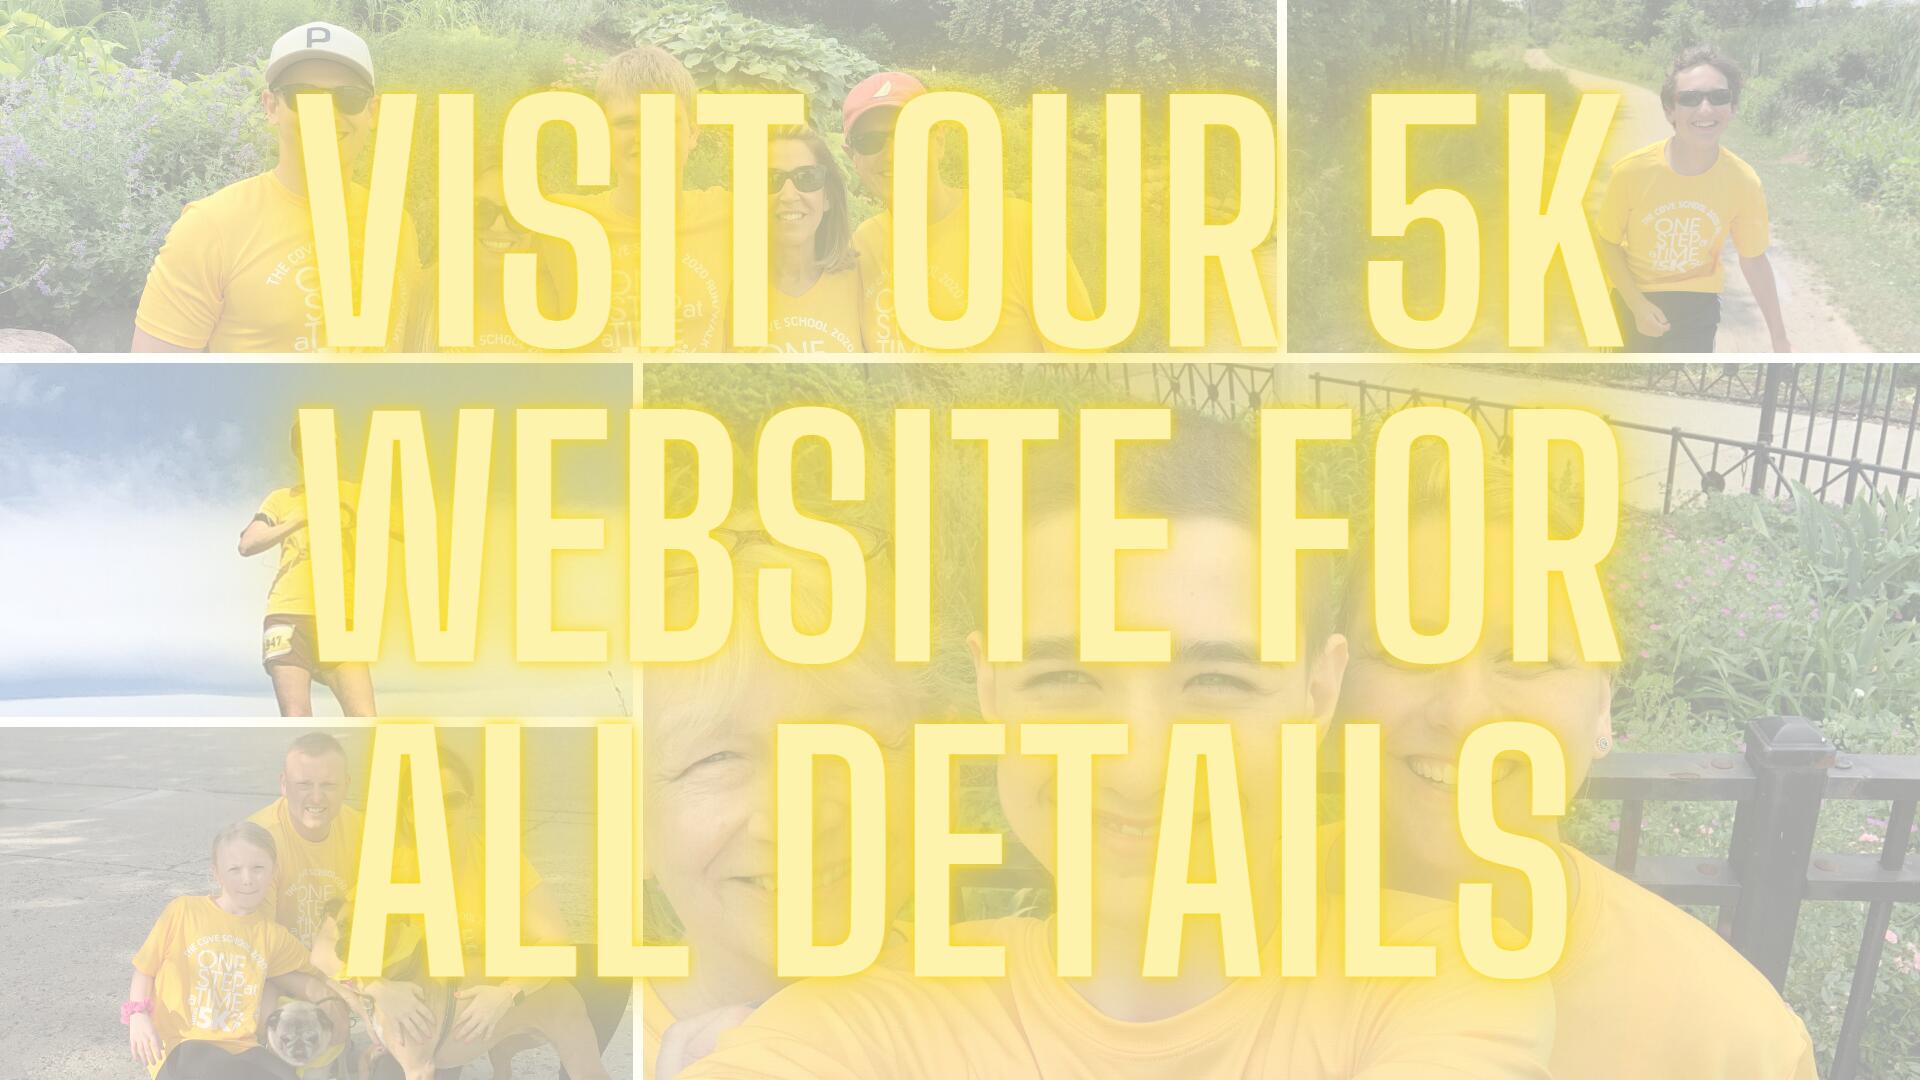 Visit our 5K website for all details